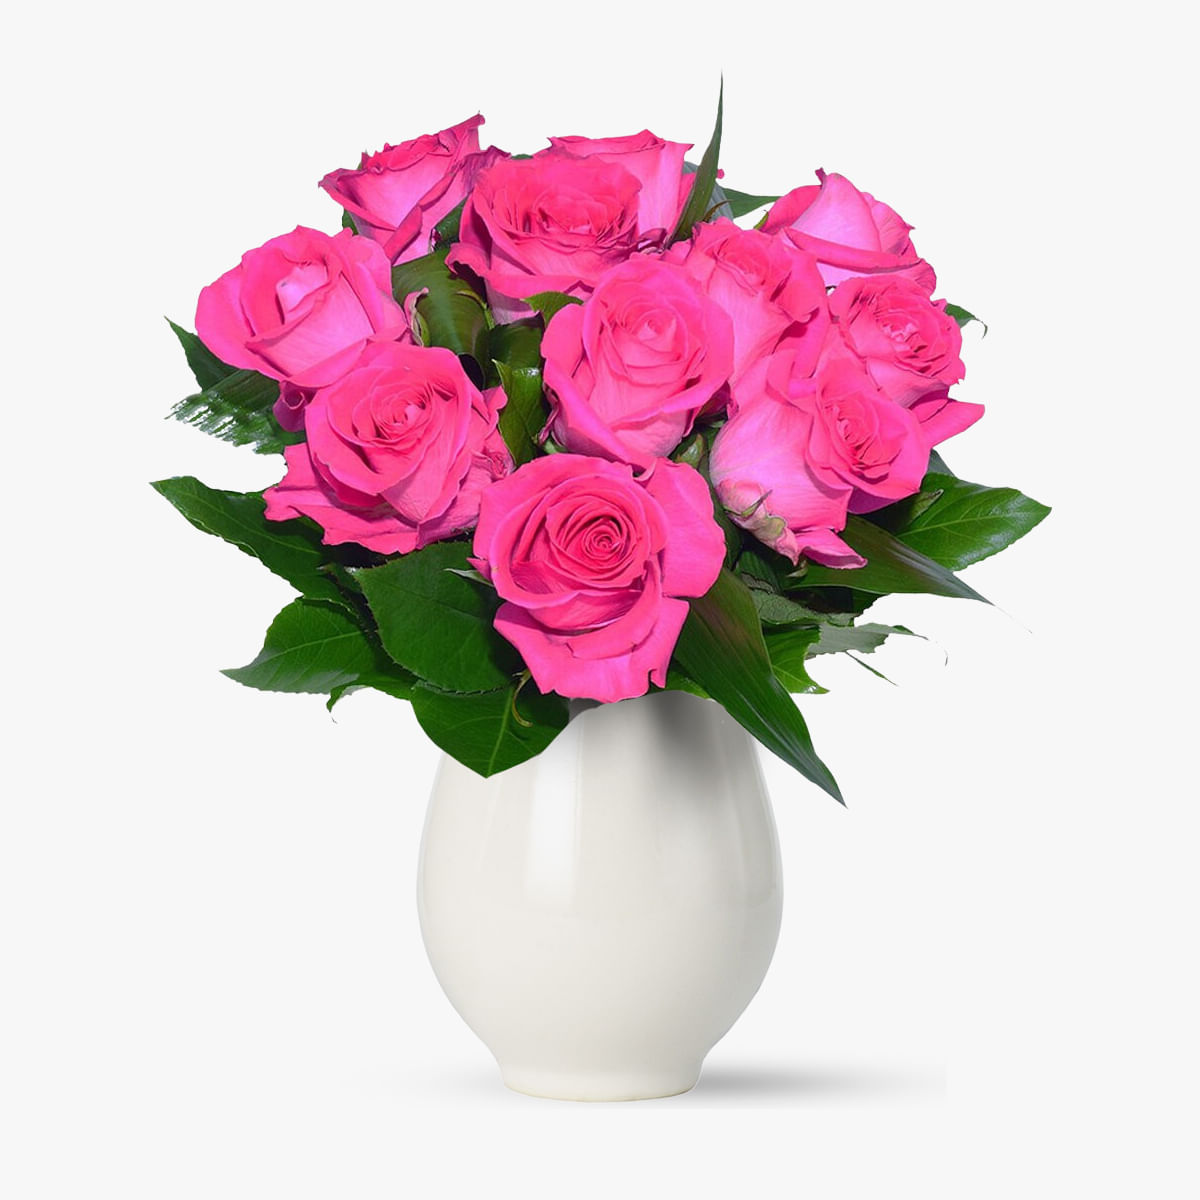 Buchet de 11 trandafiri roz – Standard